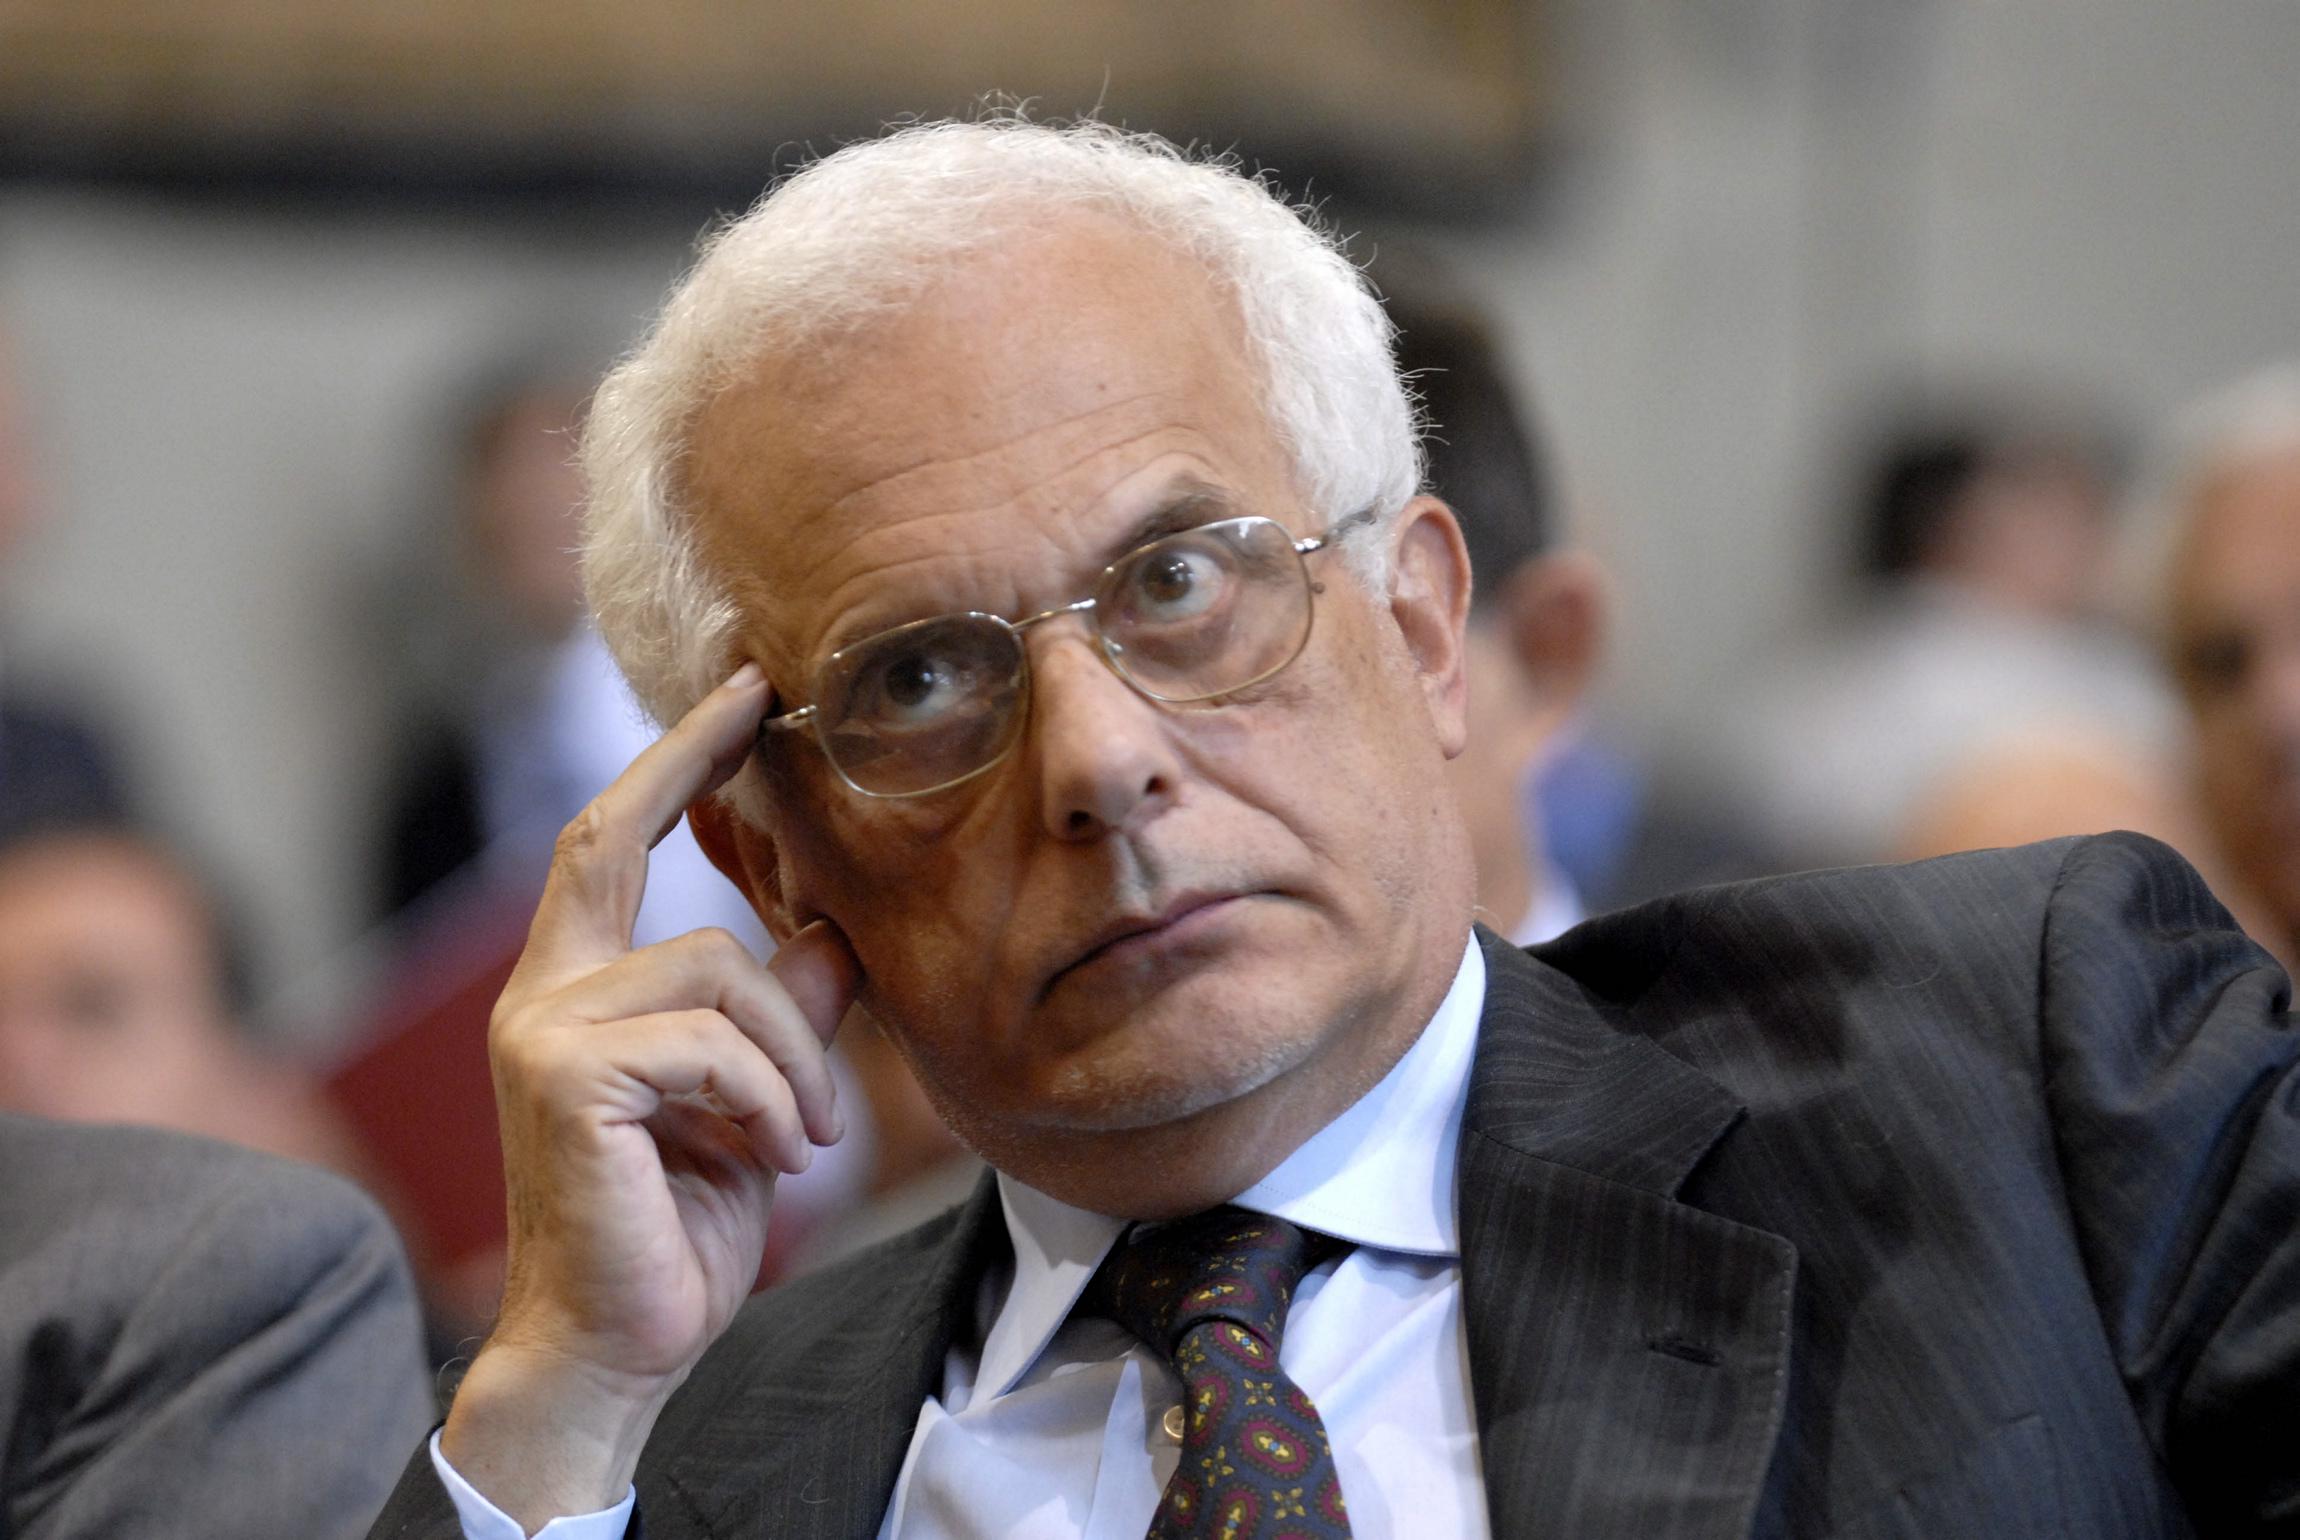 Vincenzo Visco (economista): «La questione del Catasto: un dibattito surreale mentre sarebbe urgente una riforma incisiva»